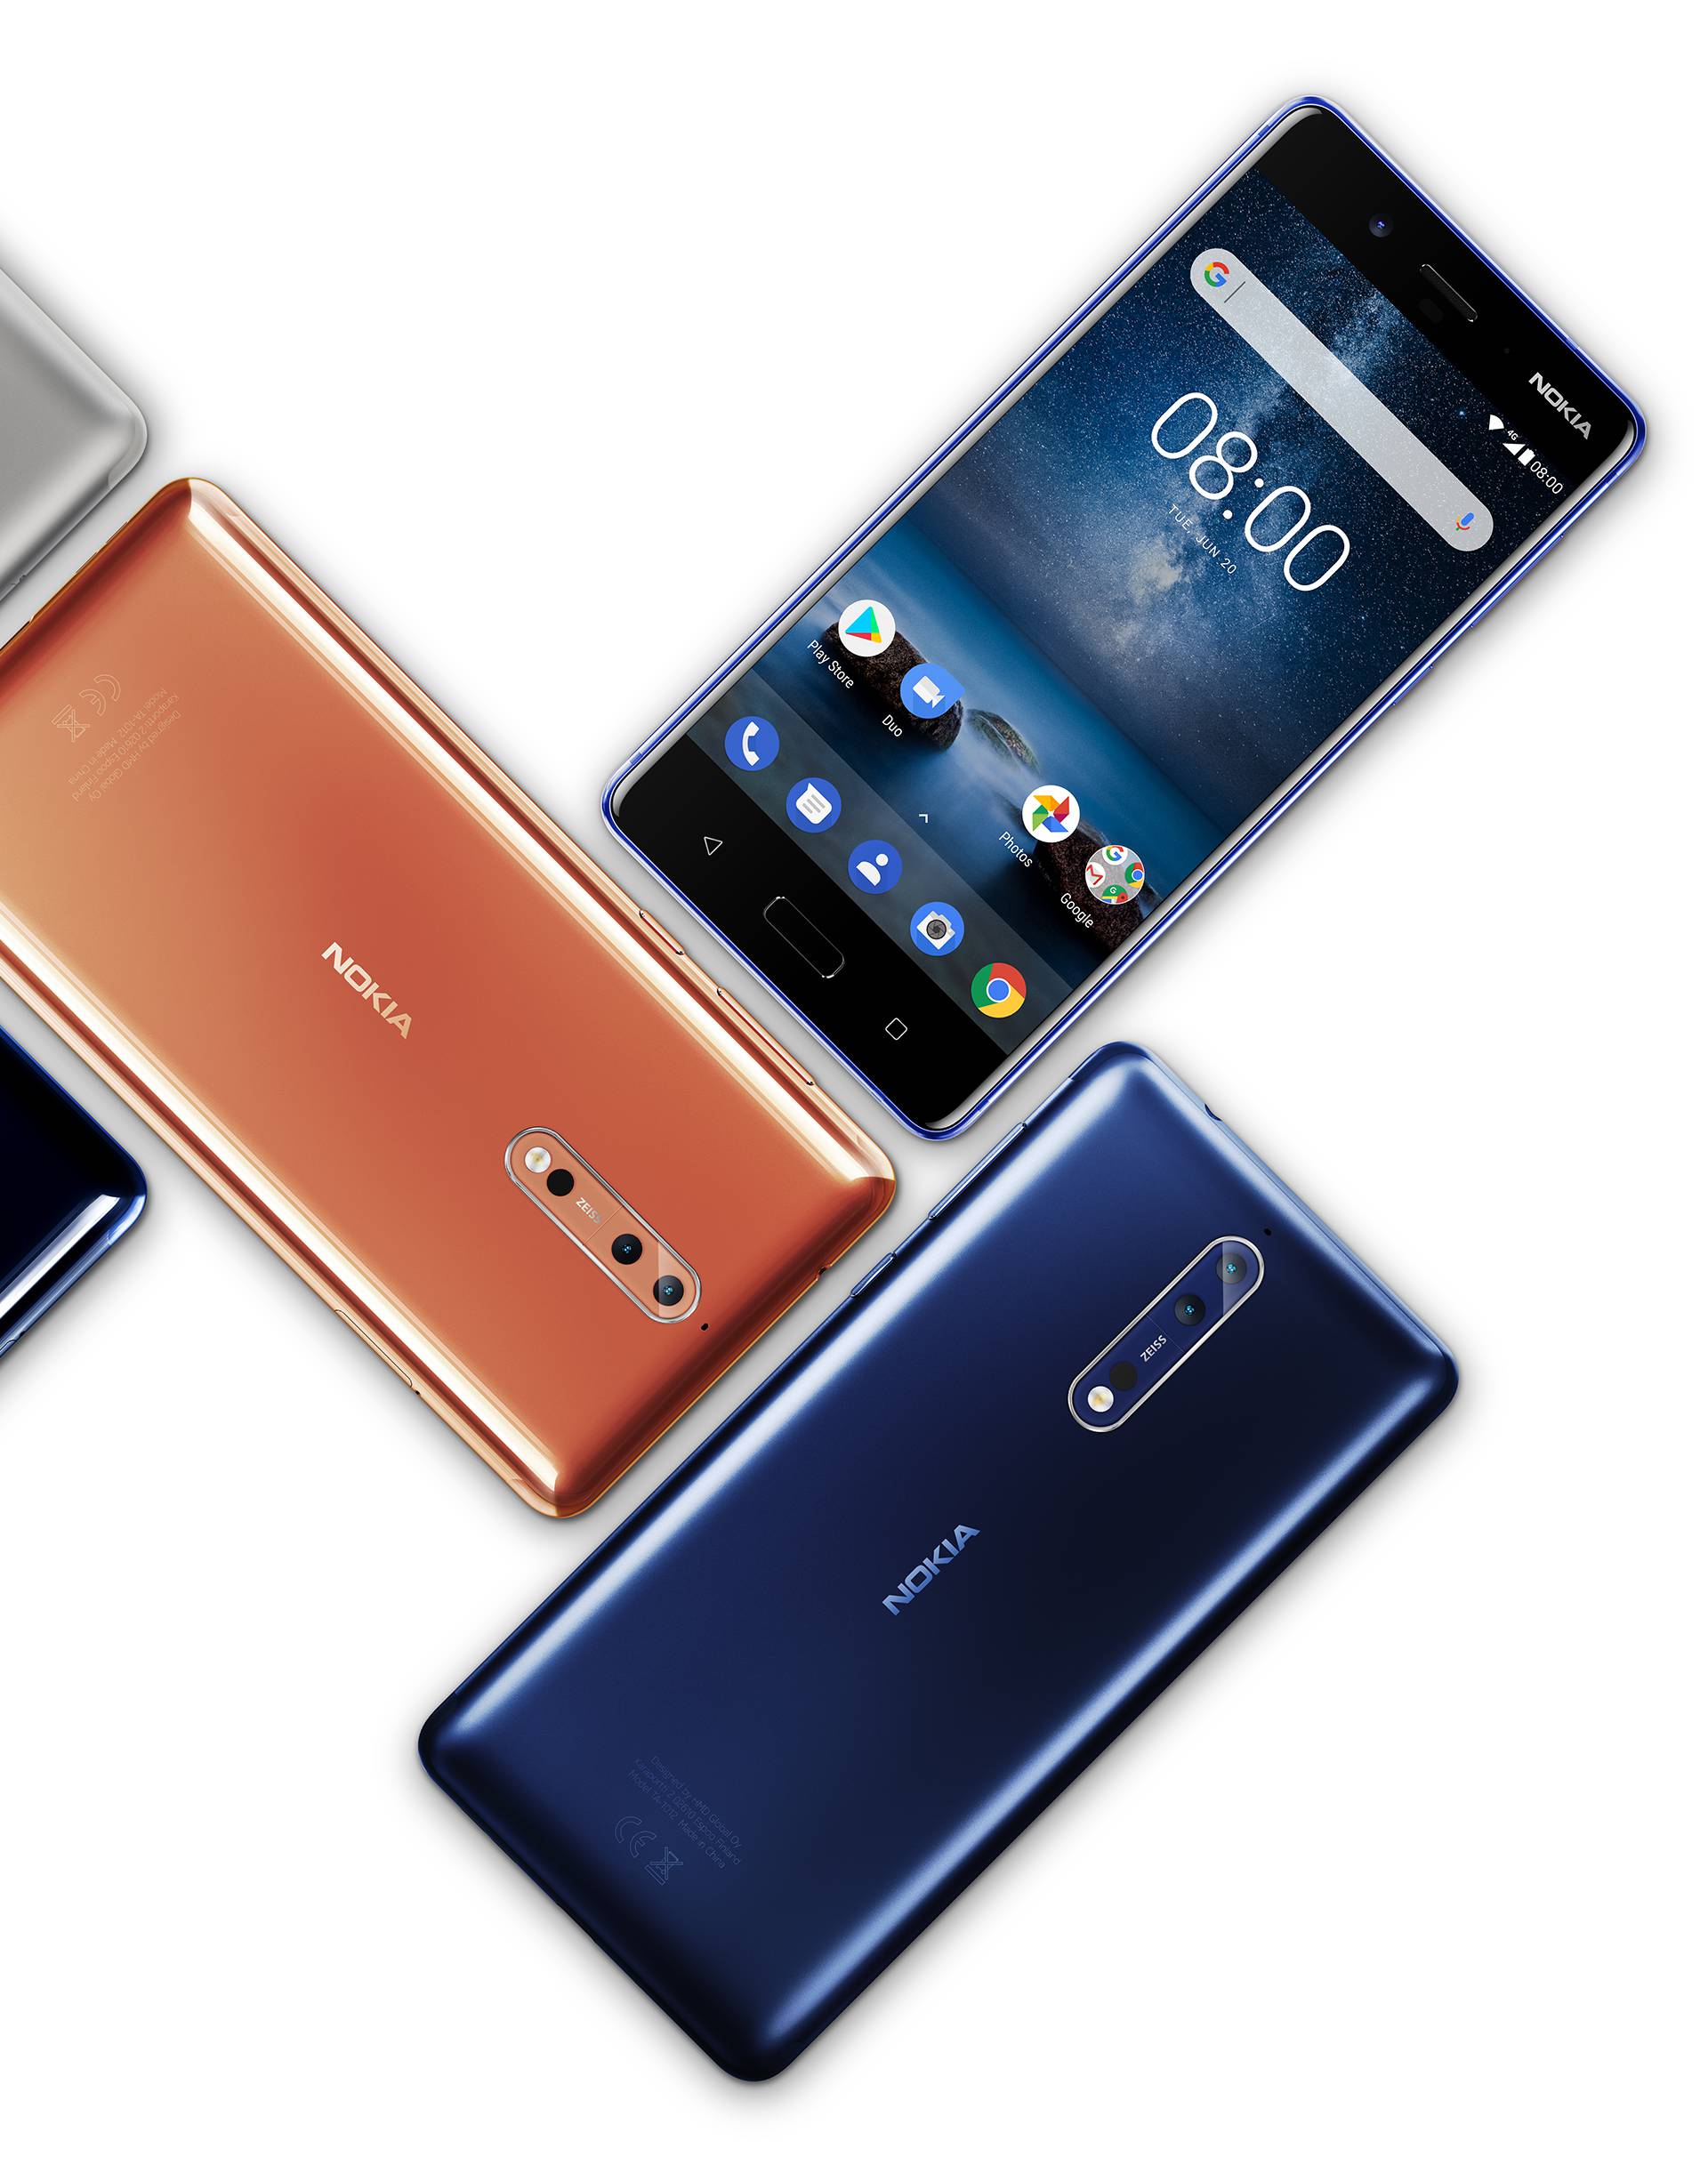 Ovo je Nokia koju ćete htjeti: Nokia 8 ima sve što vam treba